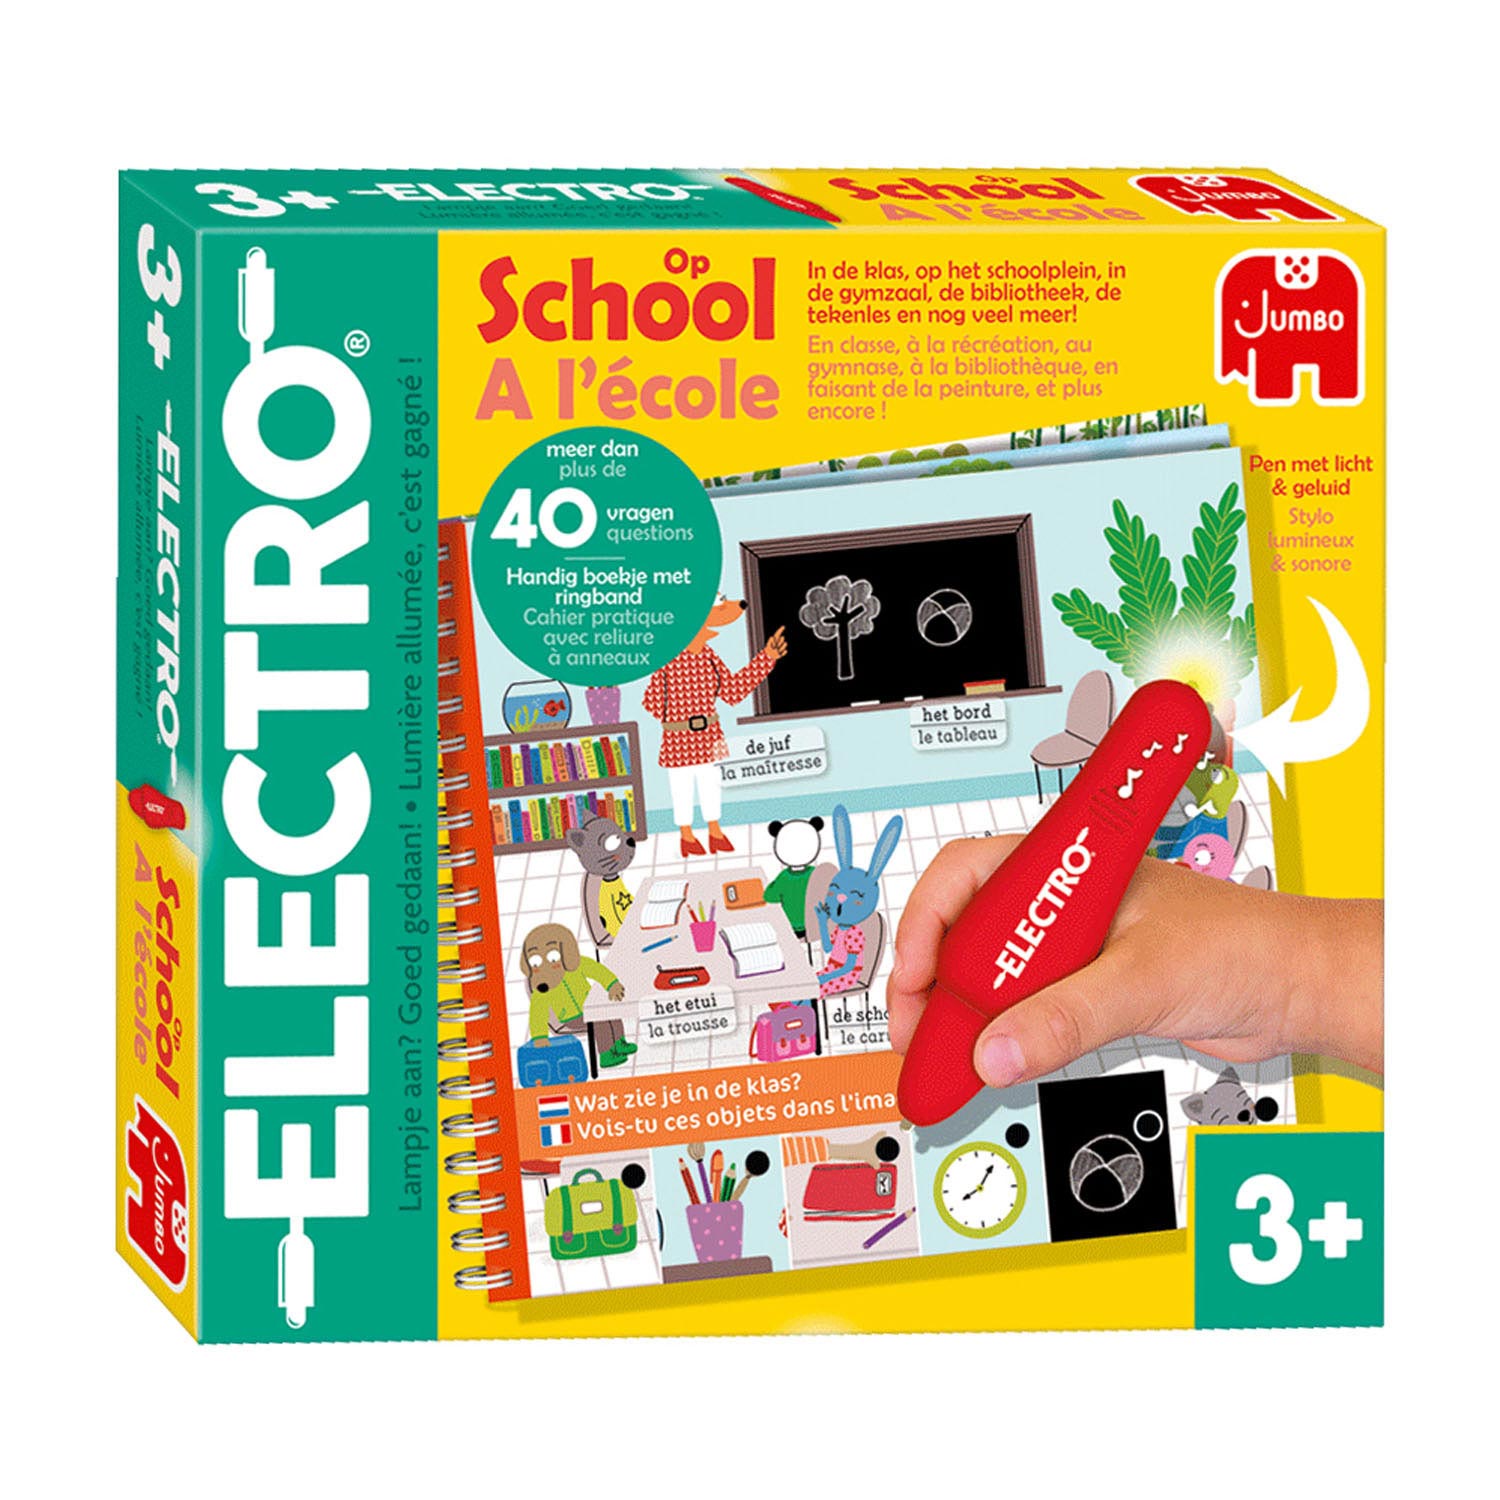 Electro - Op School